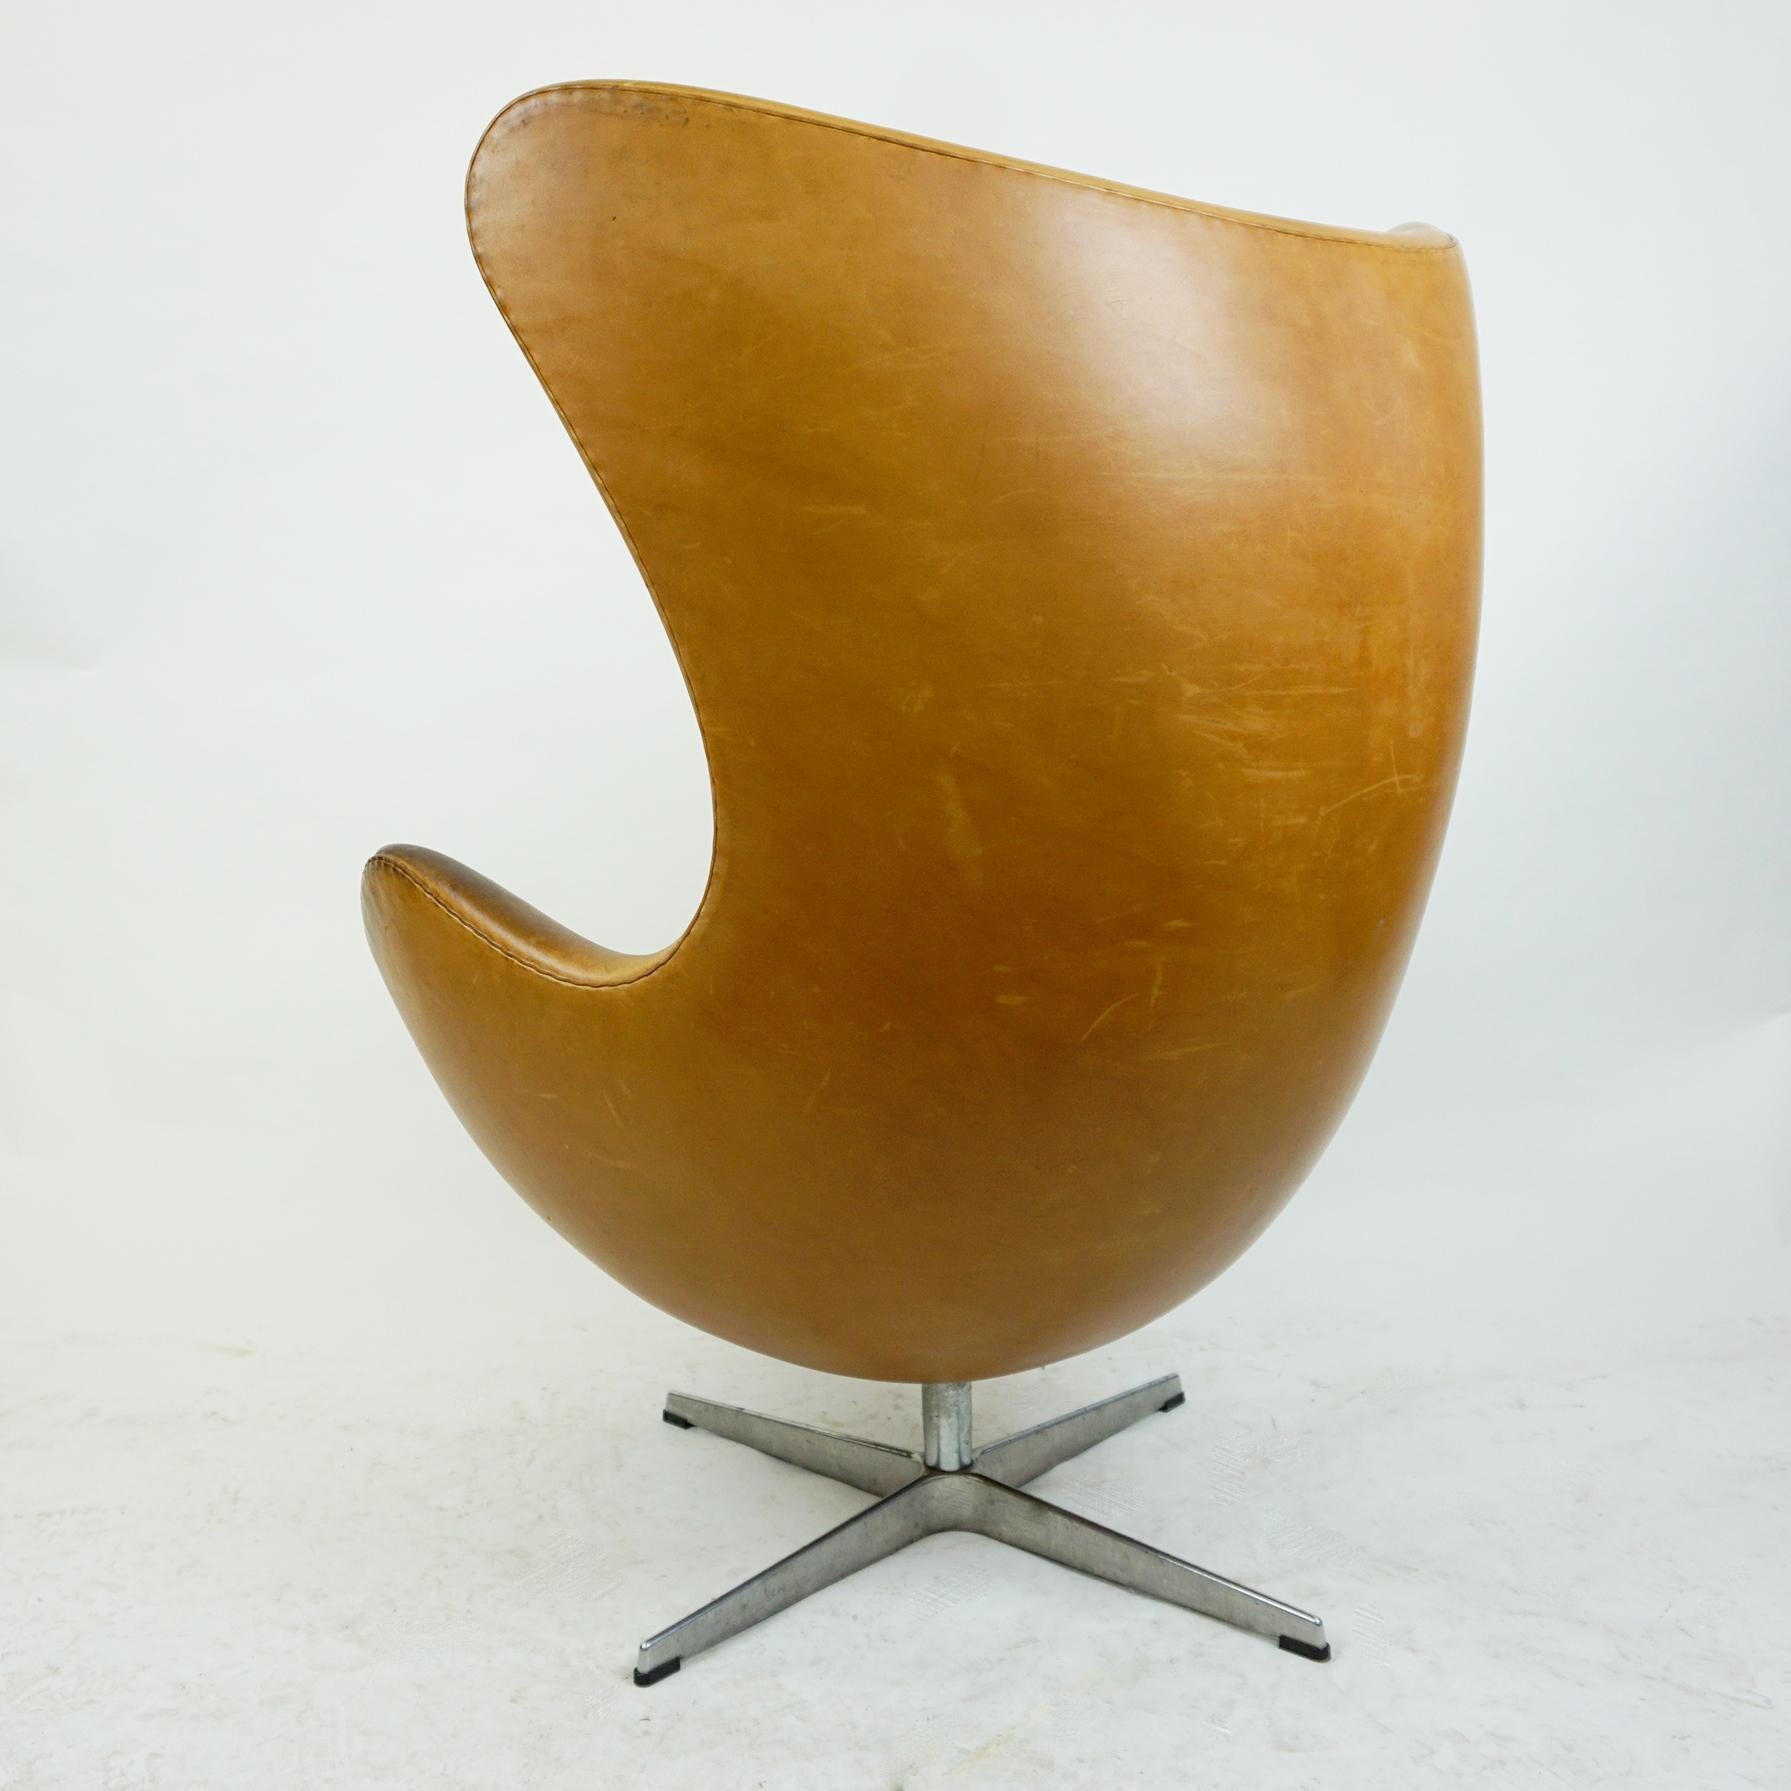 Danish Cognac Leather Egg Chair, Mod. 3317 by Arne Jacobsen for Fritz Hansen